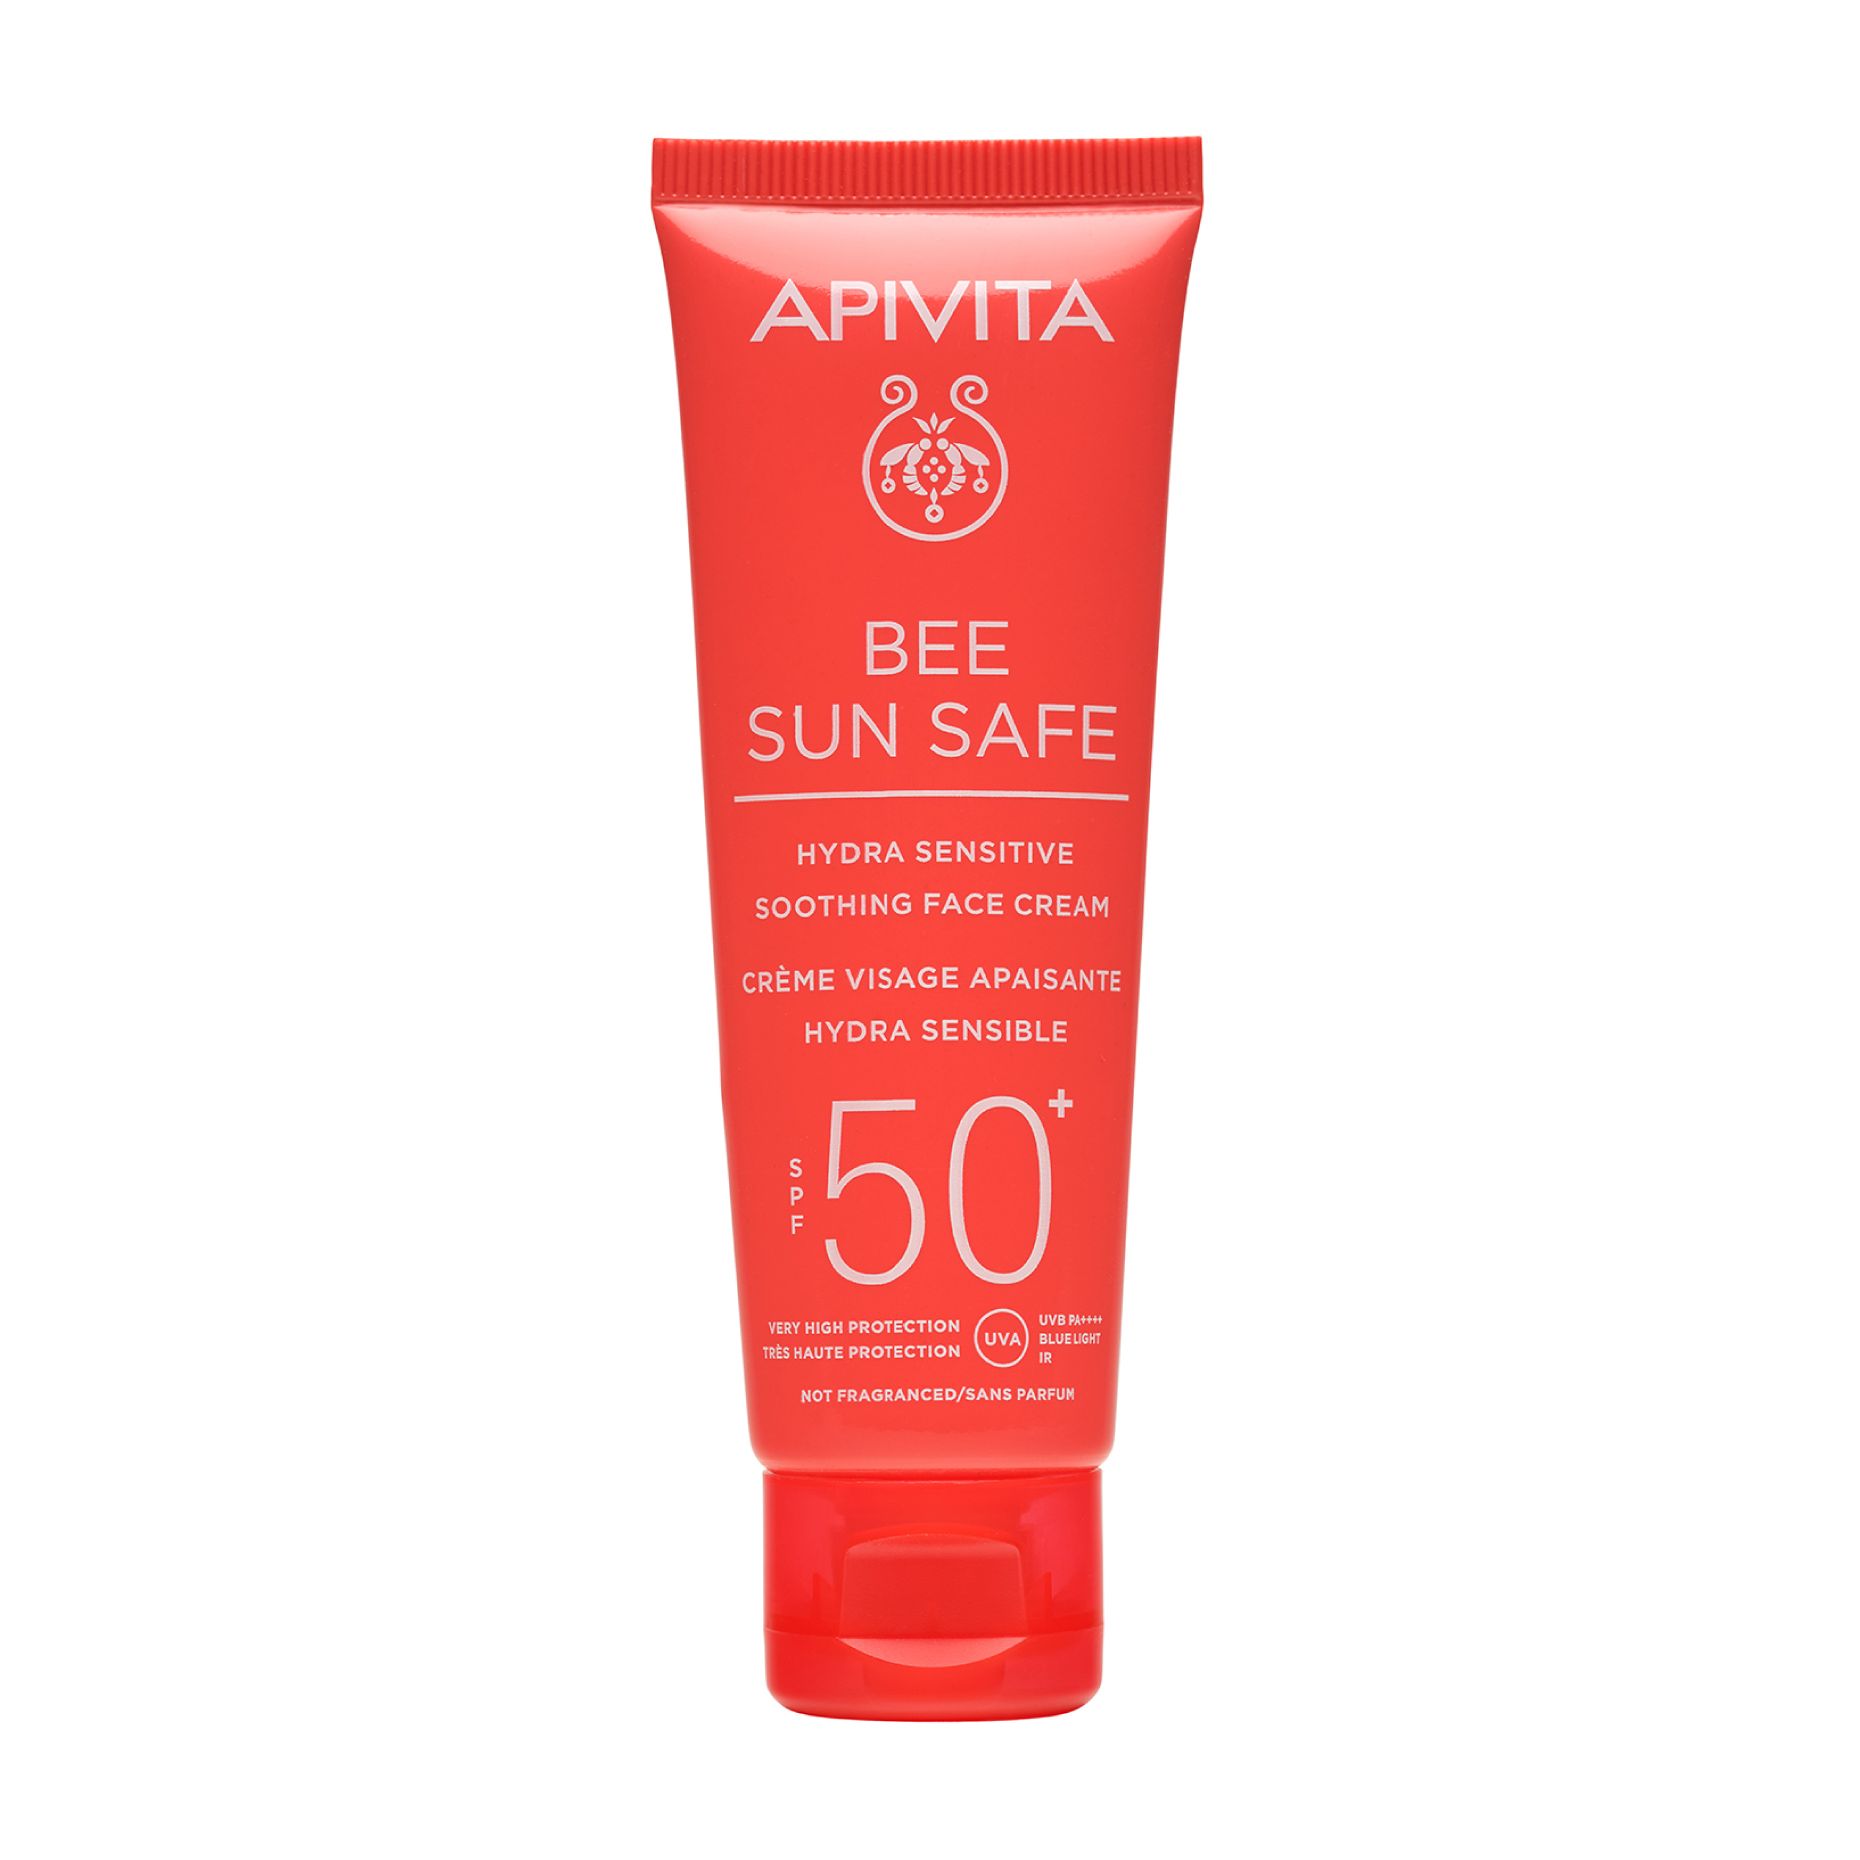 Солнцезащитный крем Apivita Bee Sun Safe Hydra Sensitive Soothing Face Cream SPF50+, 50 мл esfolio крем для лица blue flower sun солнцезащитный spf50 30